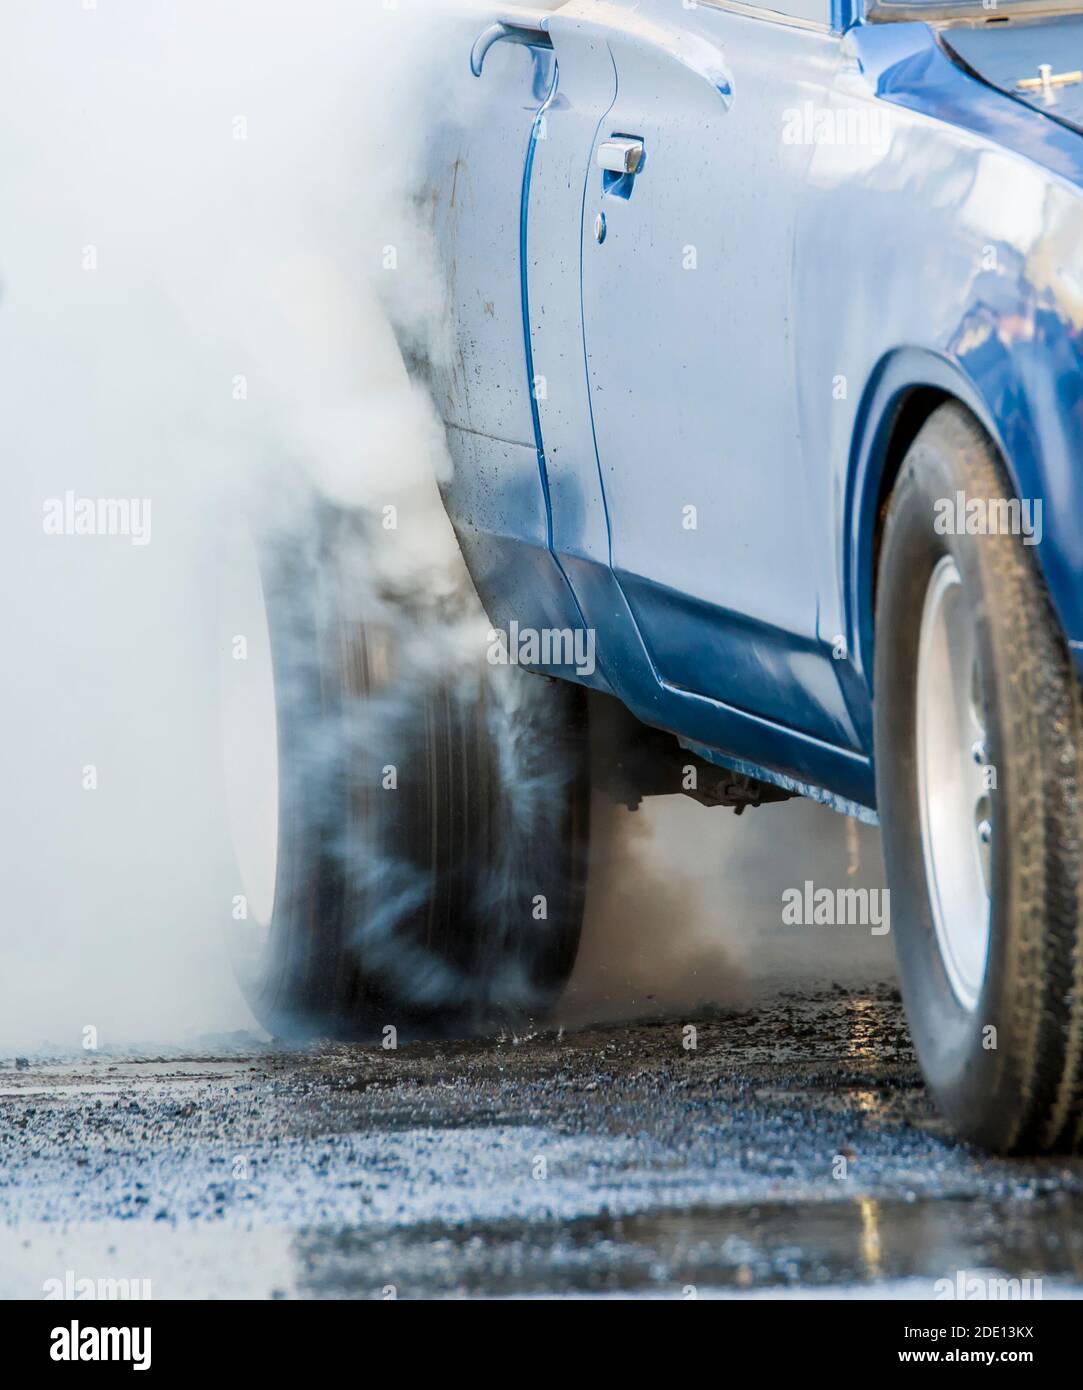 Auto che fa un burnout. Lo pneumatico posteriore gira molto velocemente e fa molto fumo. L'auto è blu ma non identificabile. Foto Stock